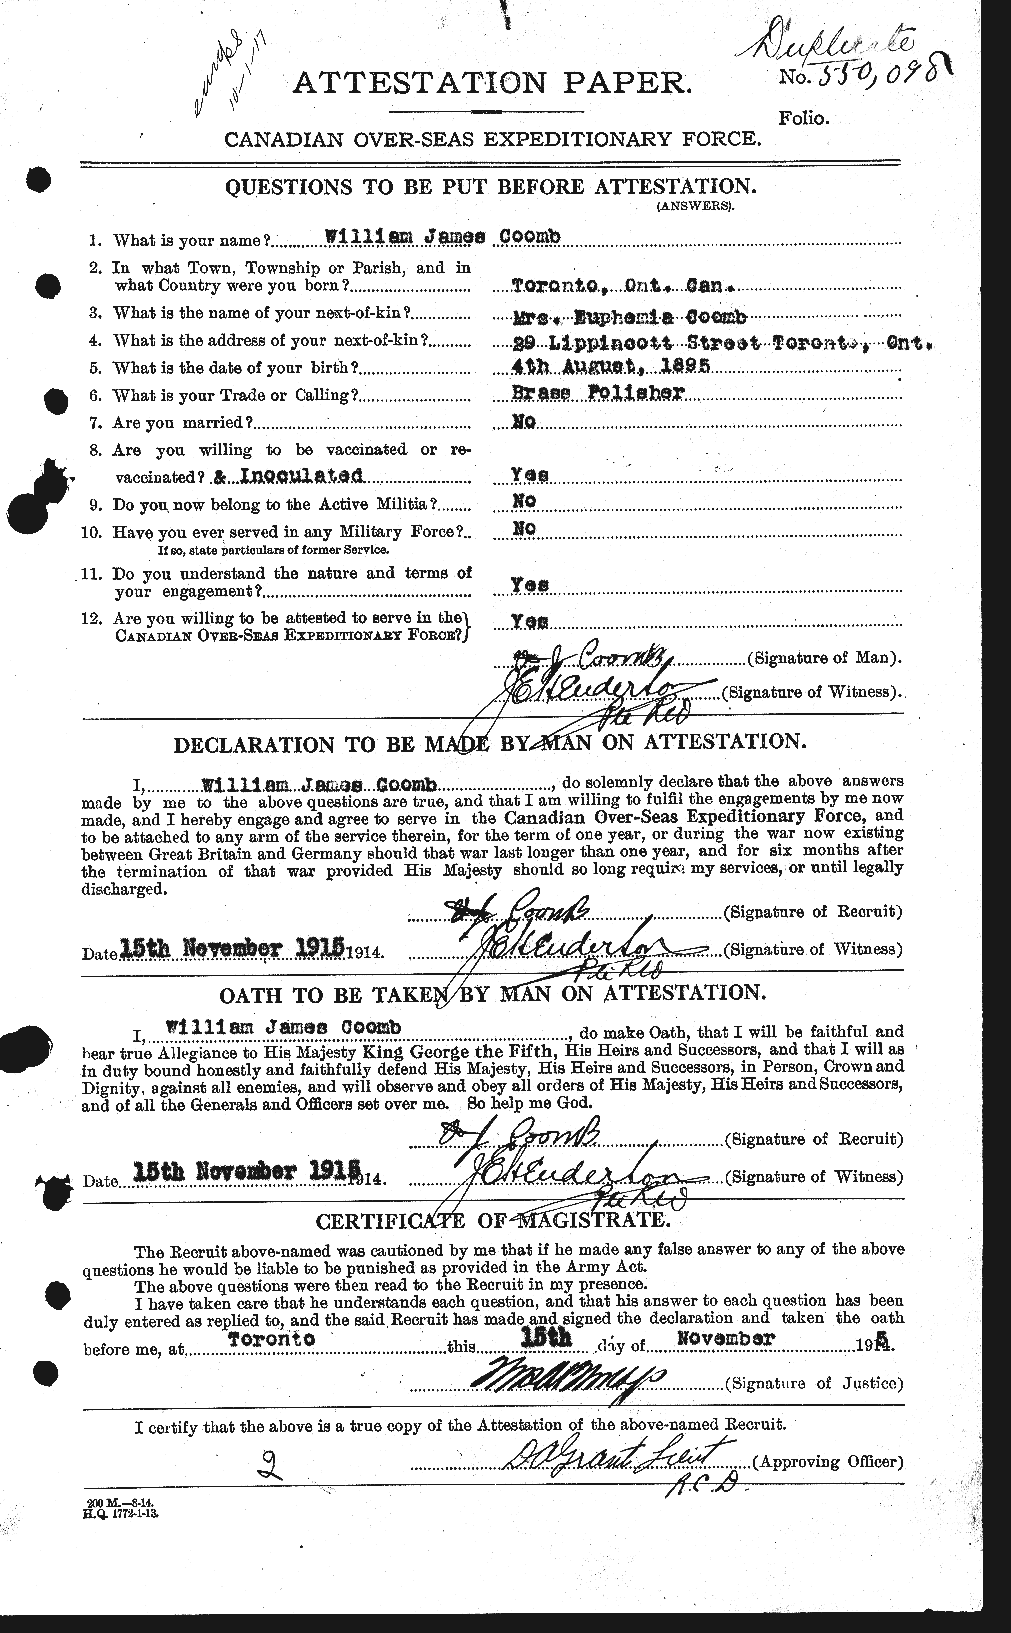 Dossiers du Personnel de la Première Guerre mondiale - CEC 055996a